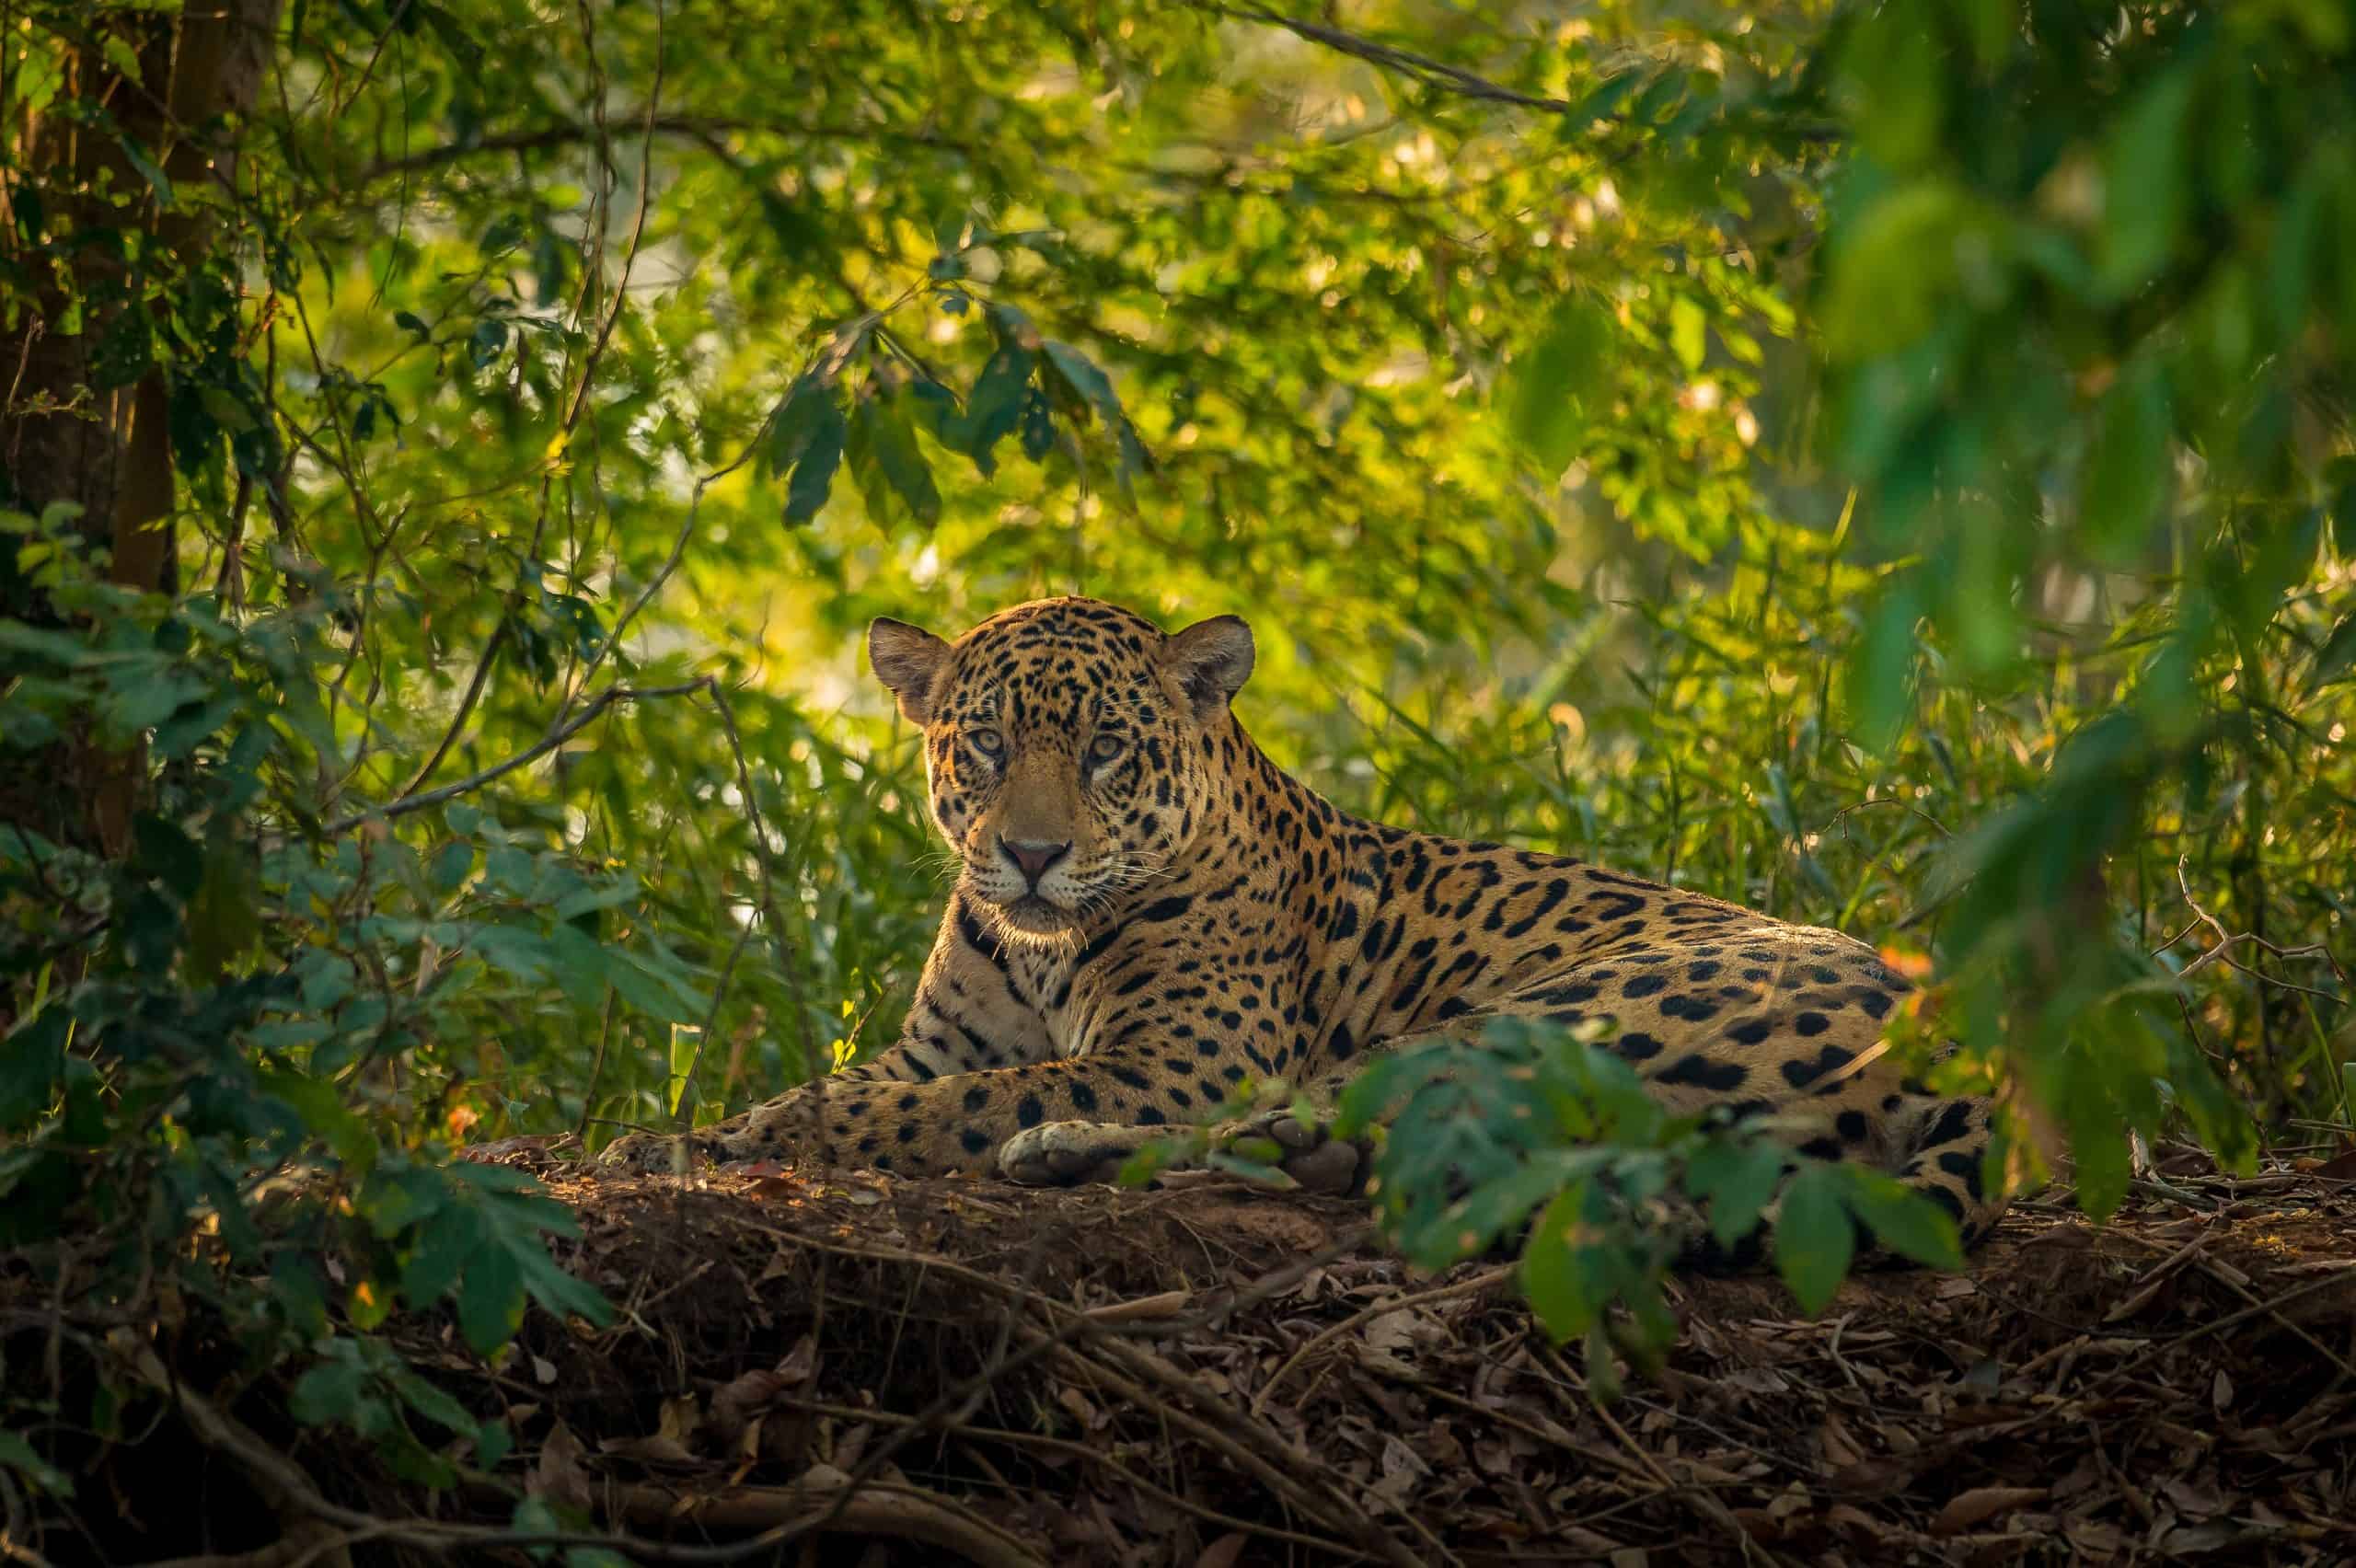 A jaguar resting in the jungle.